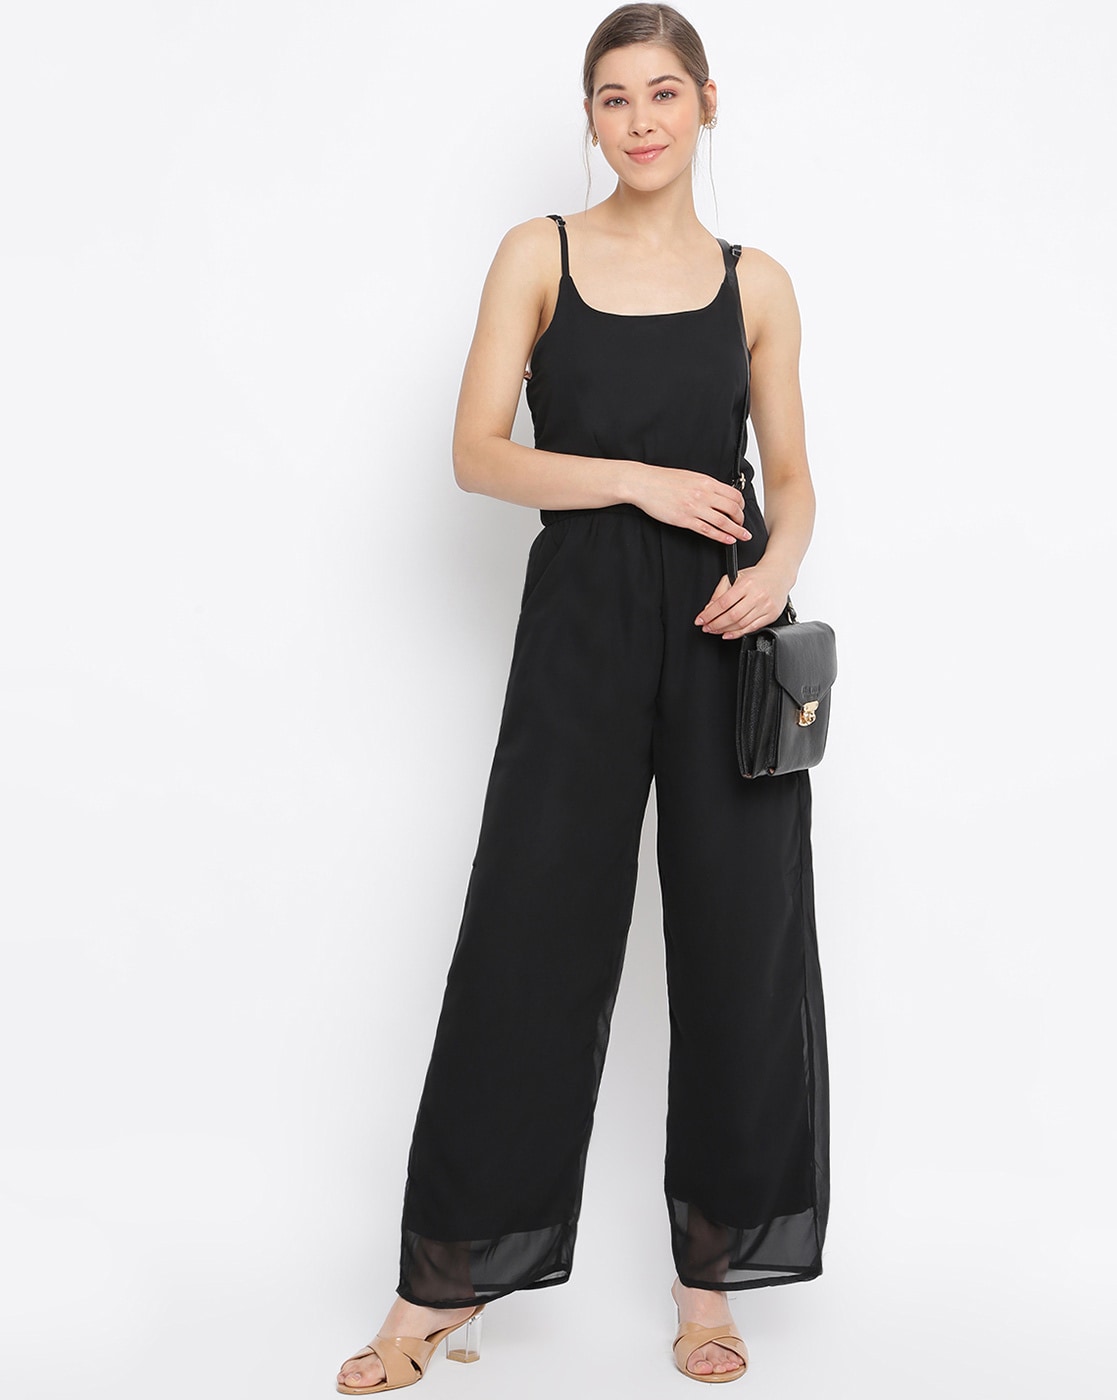 Kendra Seamless Jumpsuit - Black – Amelia Activewear